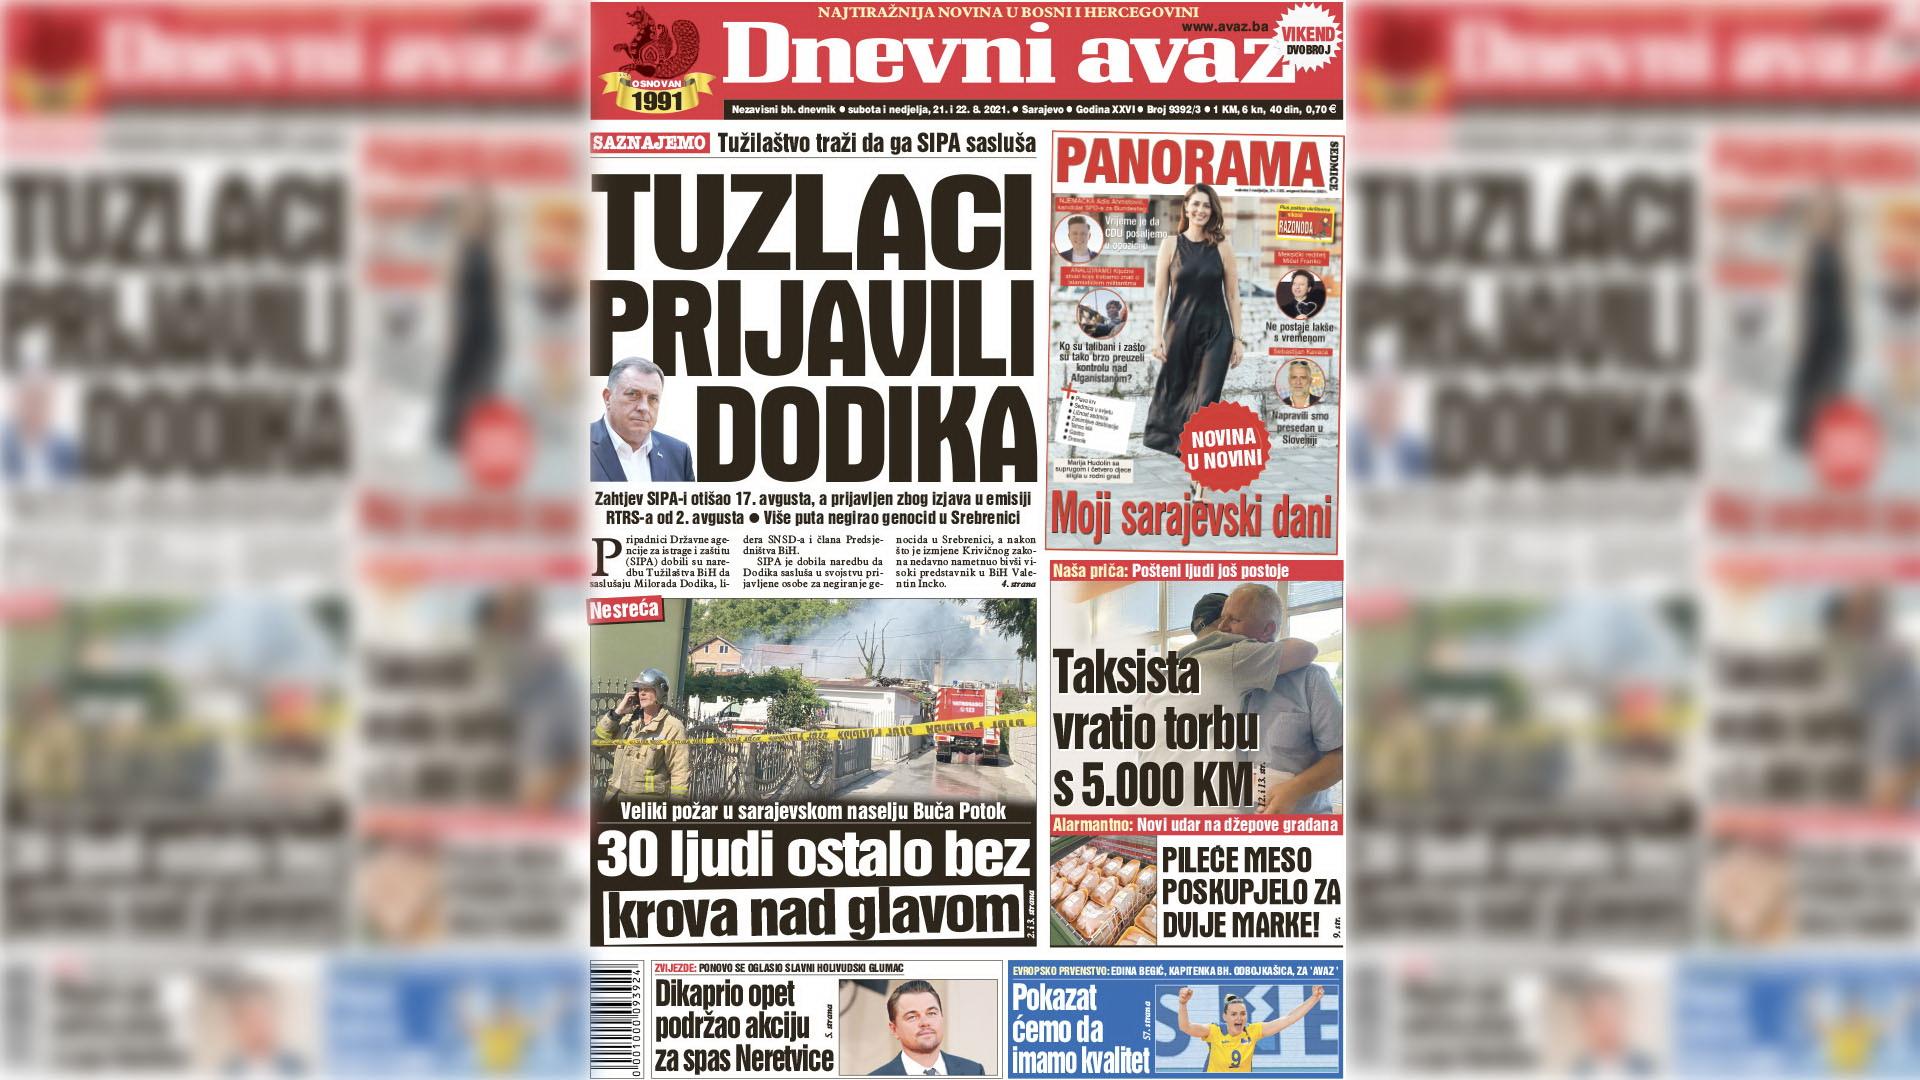 Tuzlaci prijavili Dodika